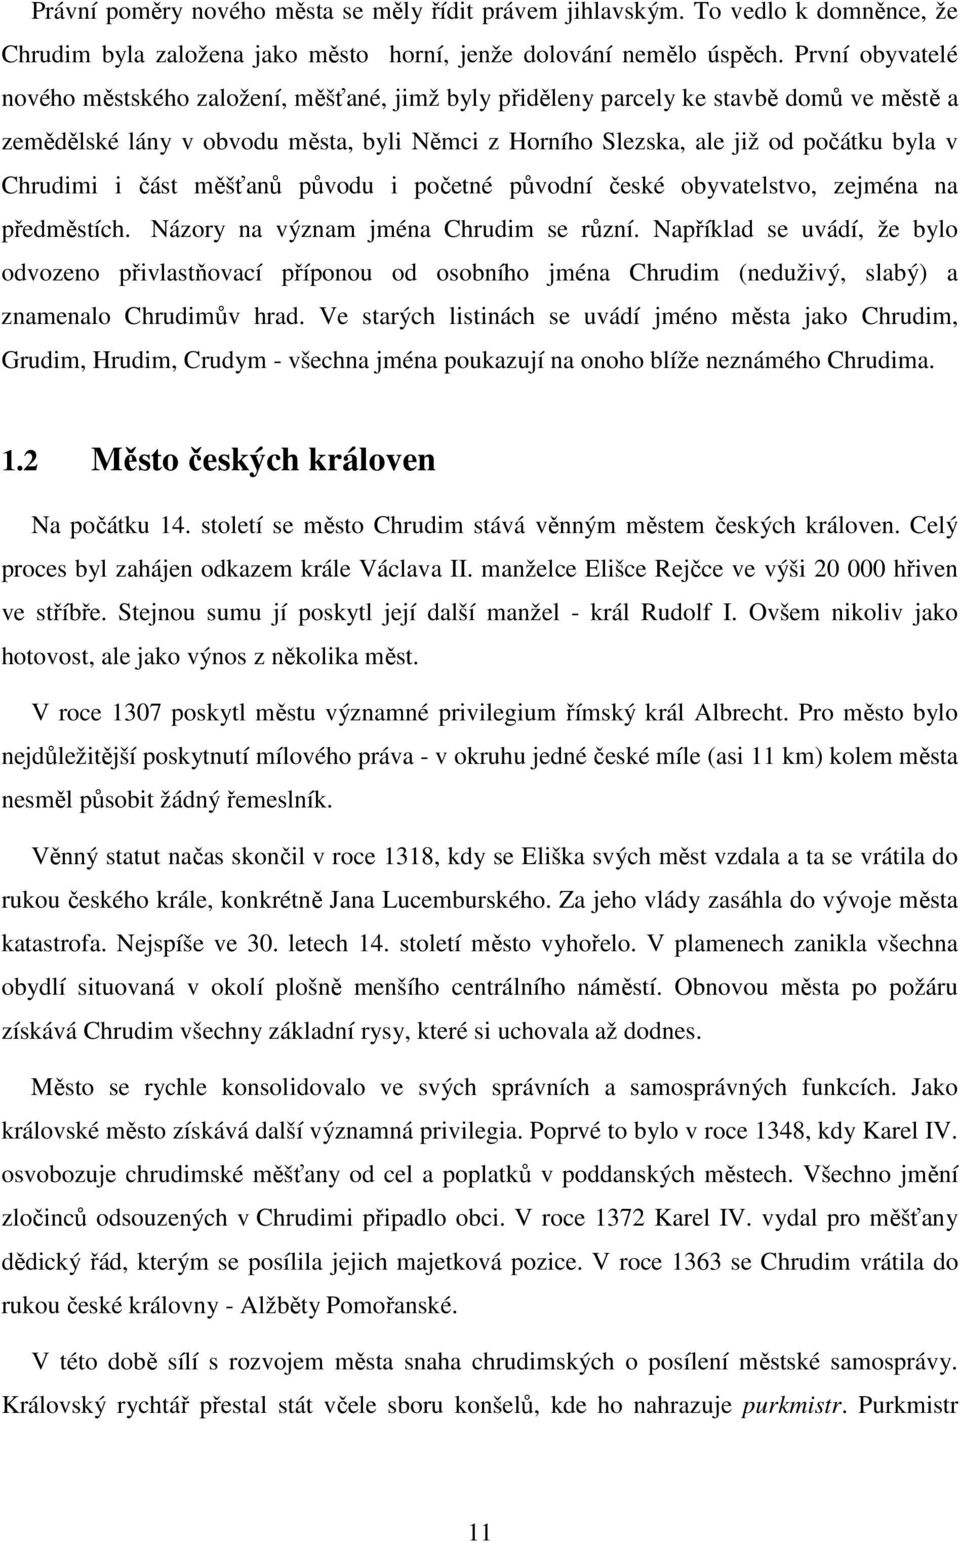 Chrudimi i část měšťanů původu i početné původní české obyvatelstvo, zejména na předměstích. Názory na význam jména Chrudim se různí.